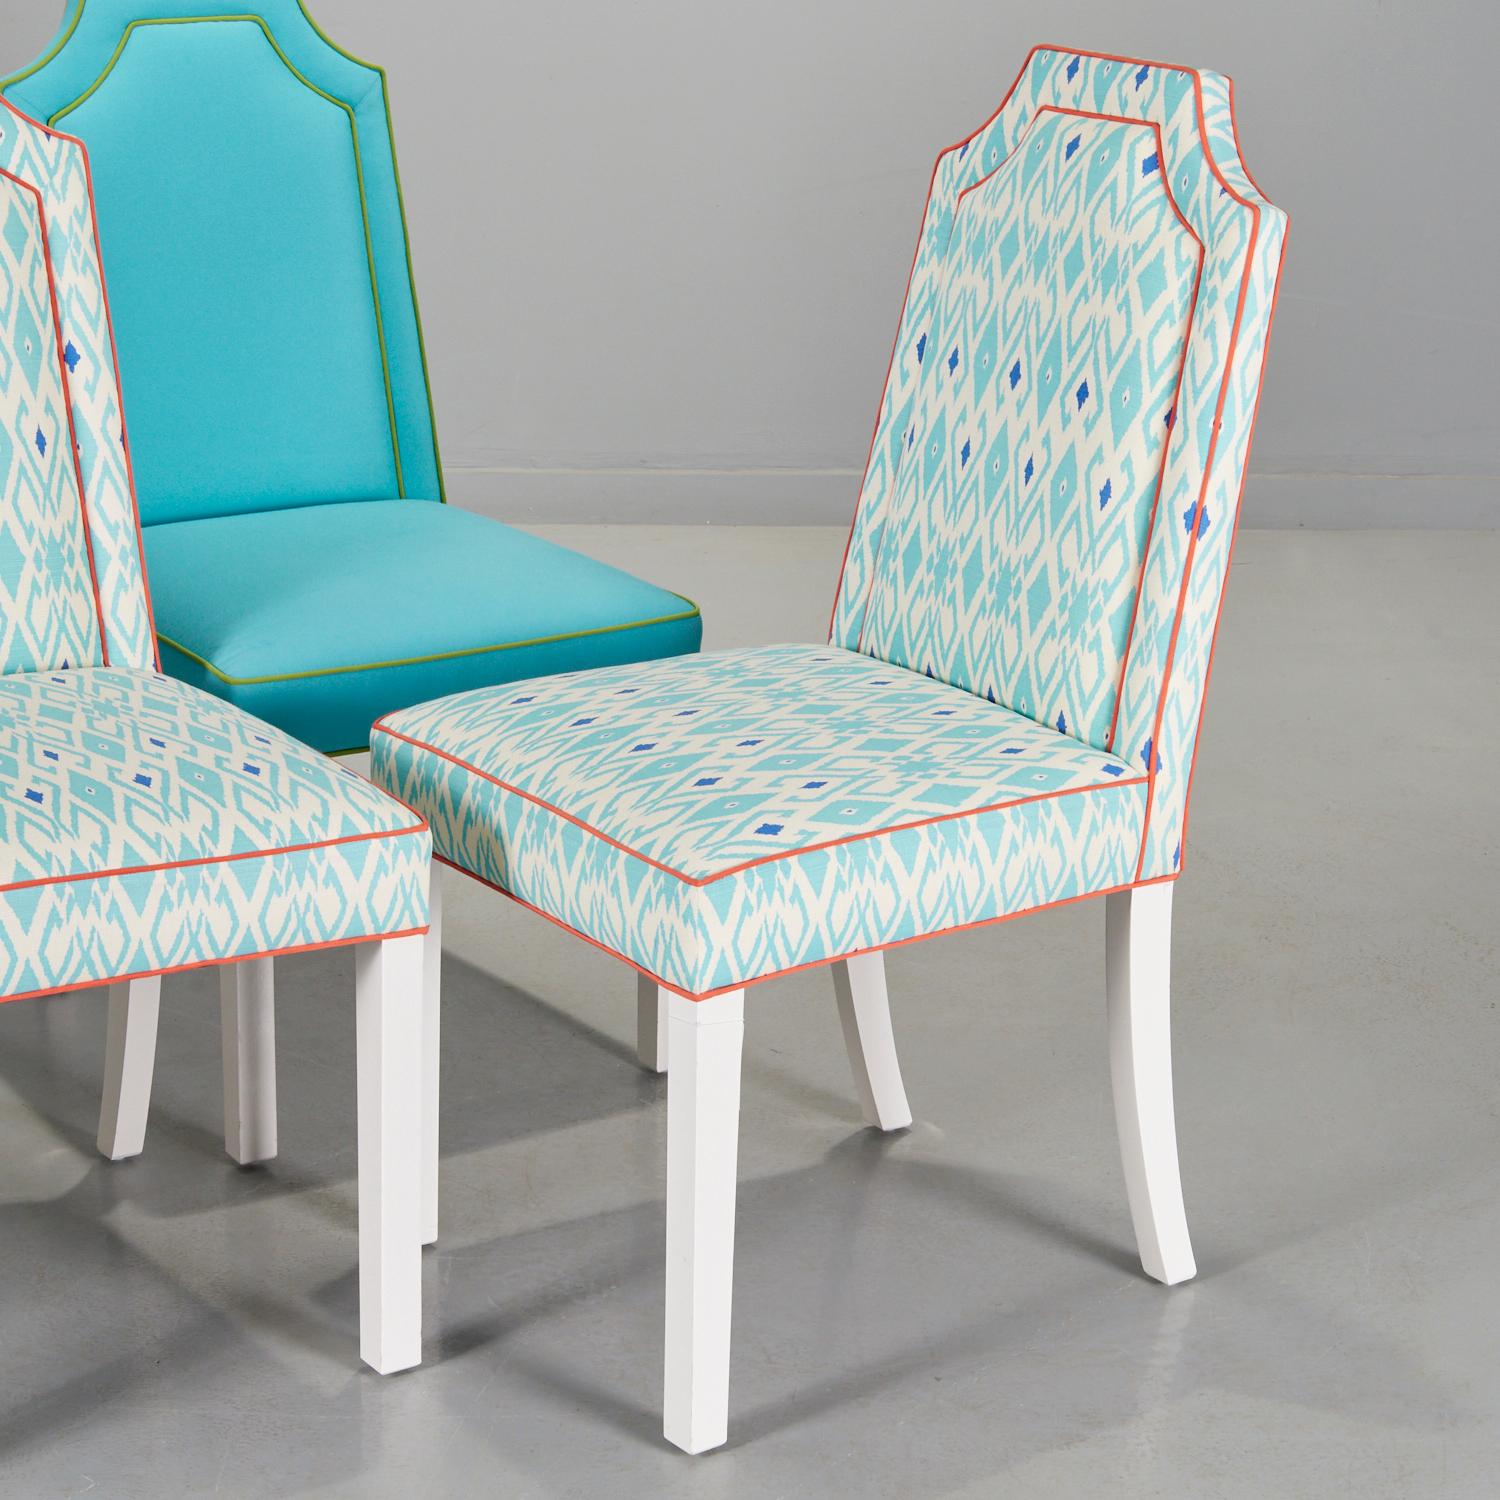 21e s., (2) paires de chaises d'appoint Parsons tapissées de couleurs vives, deux en turquoise avec passepoil vert lime, et deux en style Ikat bleu avec passepoil corail, chacune avec dossier rembourré, sur pieds laqués blancs, non marqués,